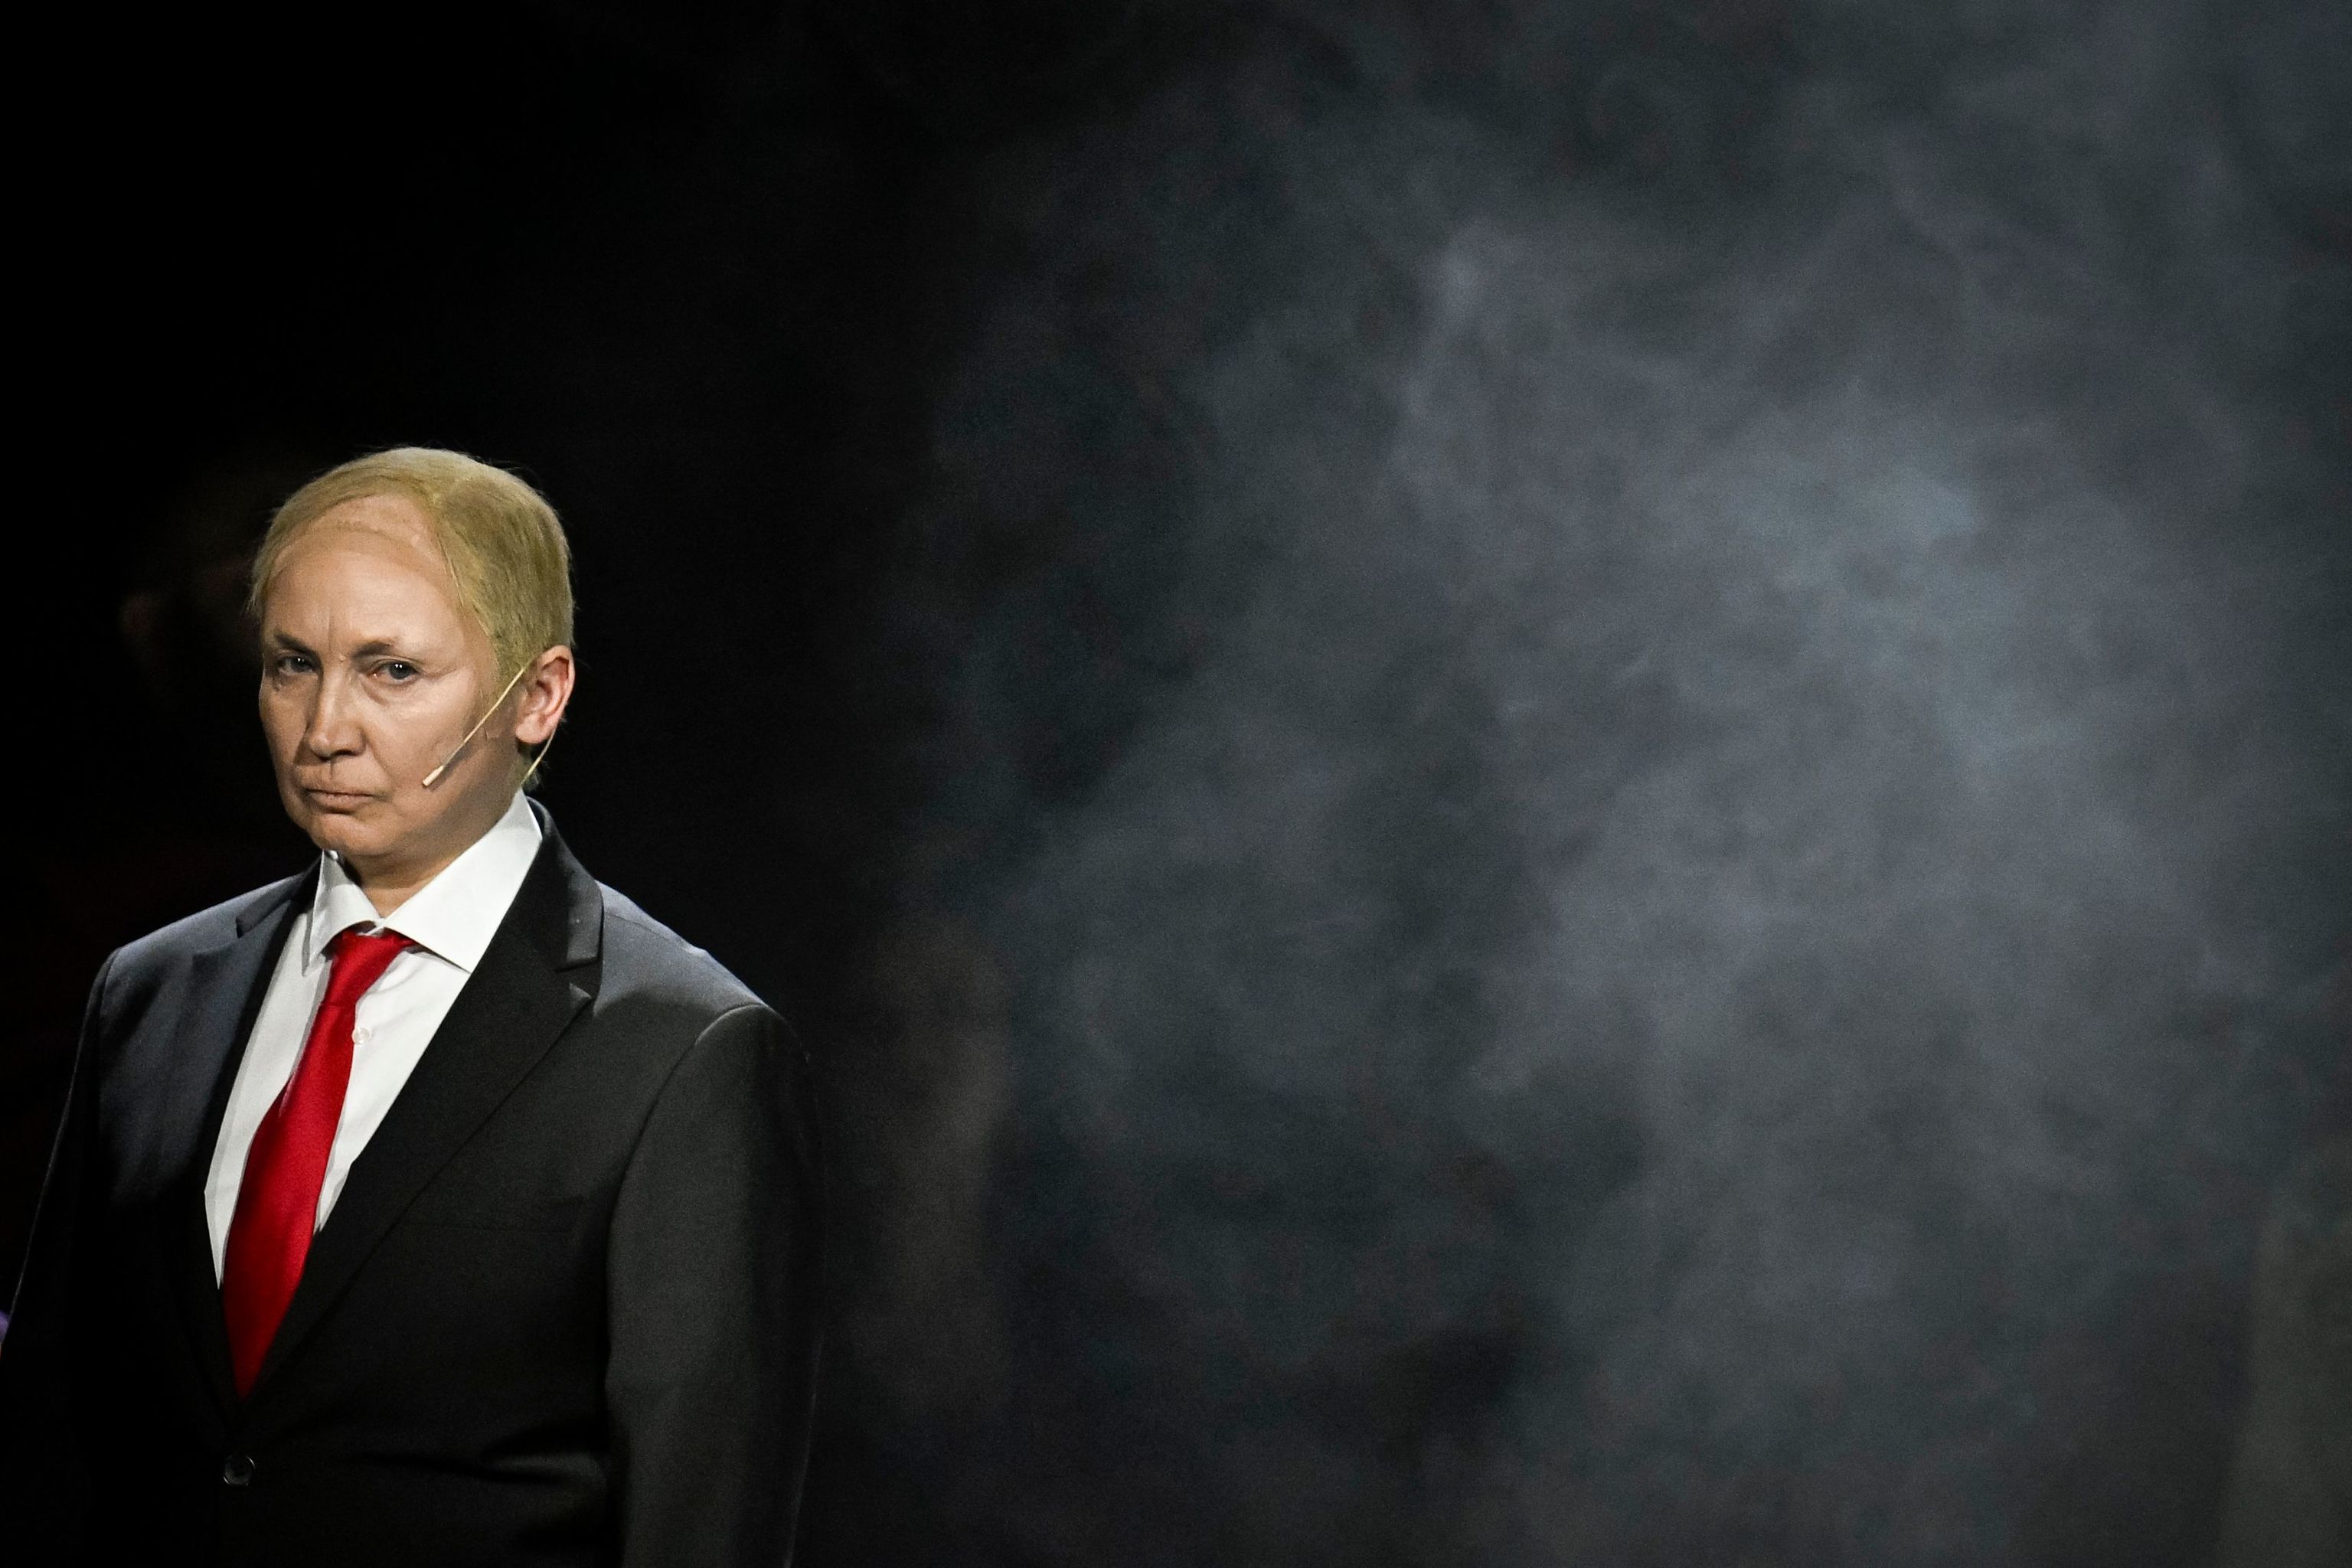 El presidente ruso Vladimir Putin y sus aliados son juzgados por crímenes de guerra en una sátira teatral